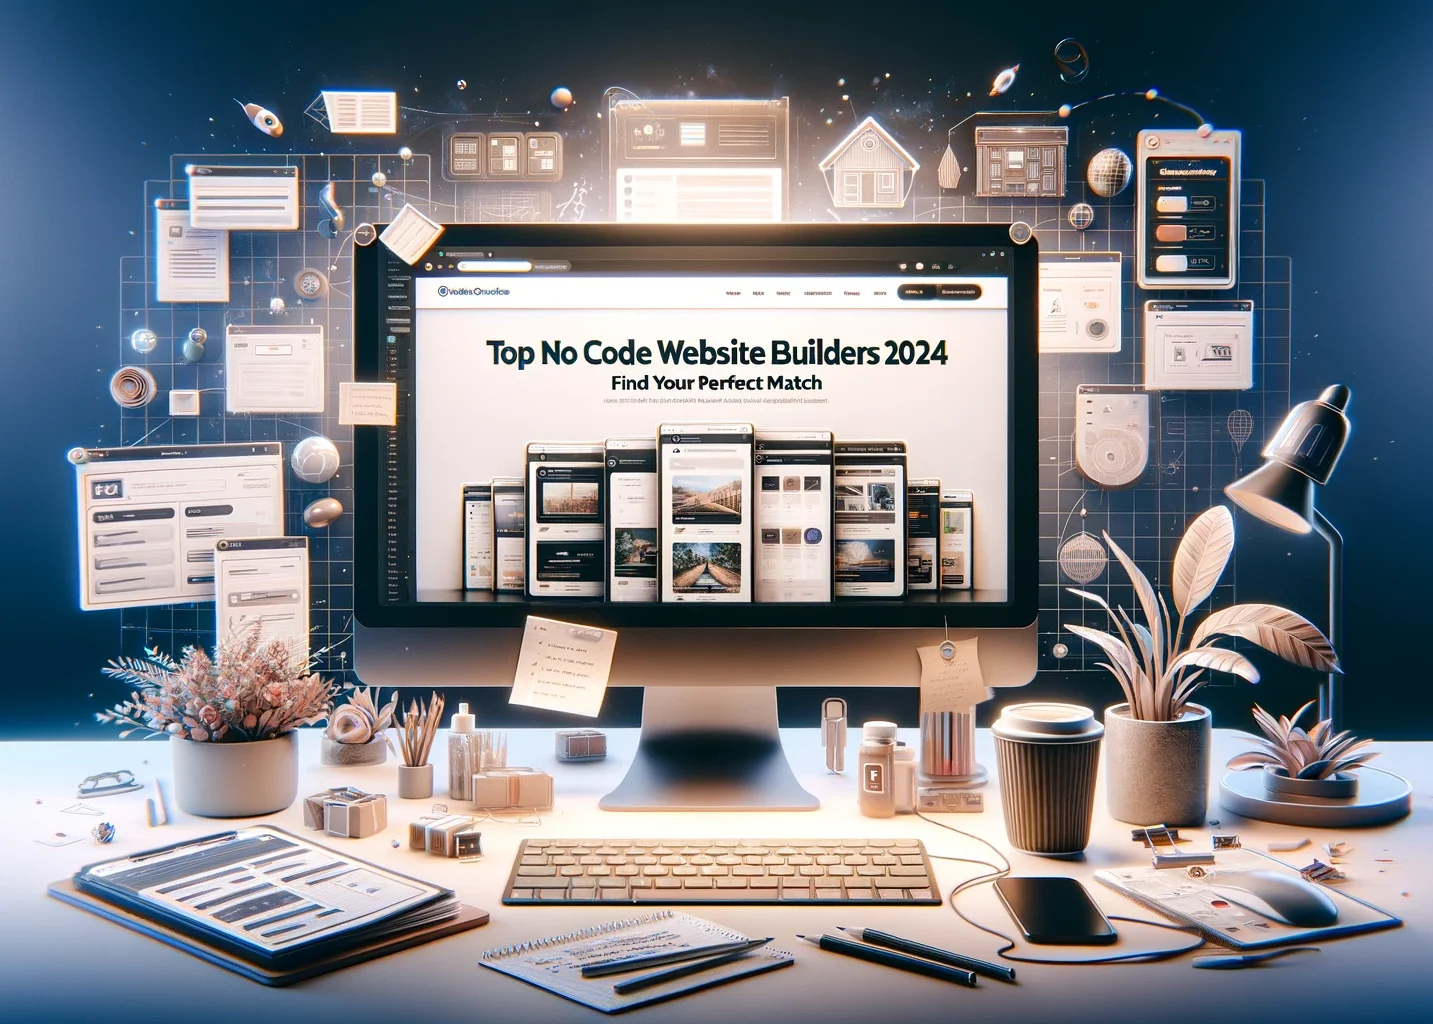 Top No Code Website Builders 2024